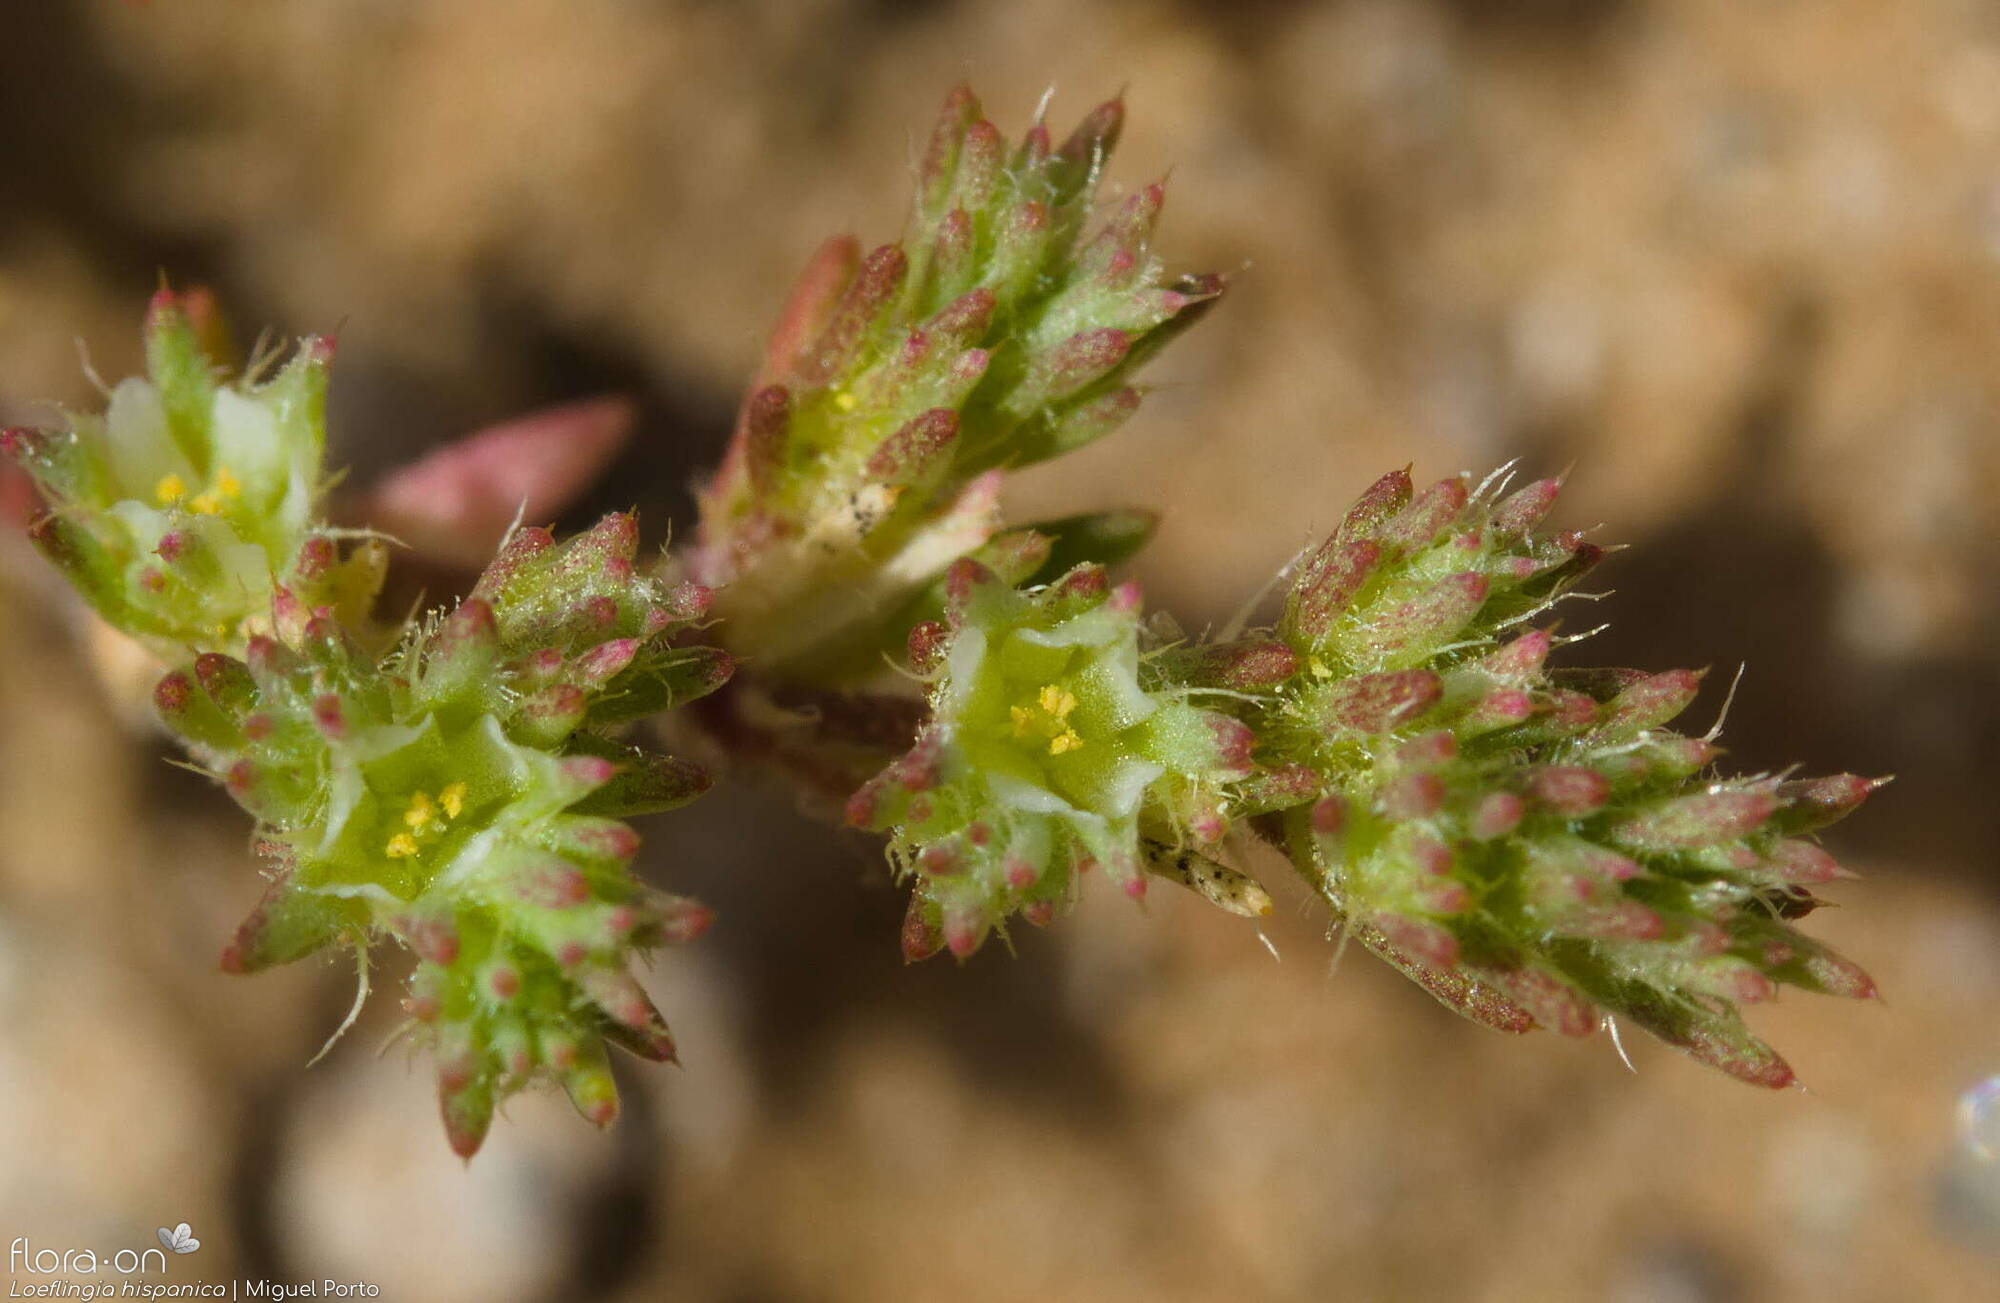 Loeflingia hispanica - Flor (close-up) | Miguel Porto; CC BY-NC 4.0